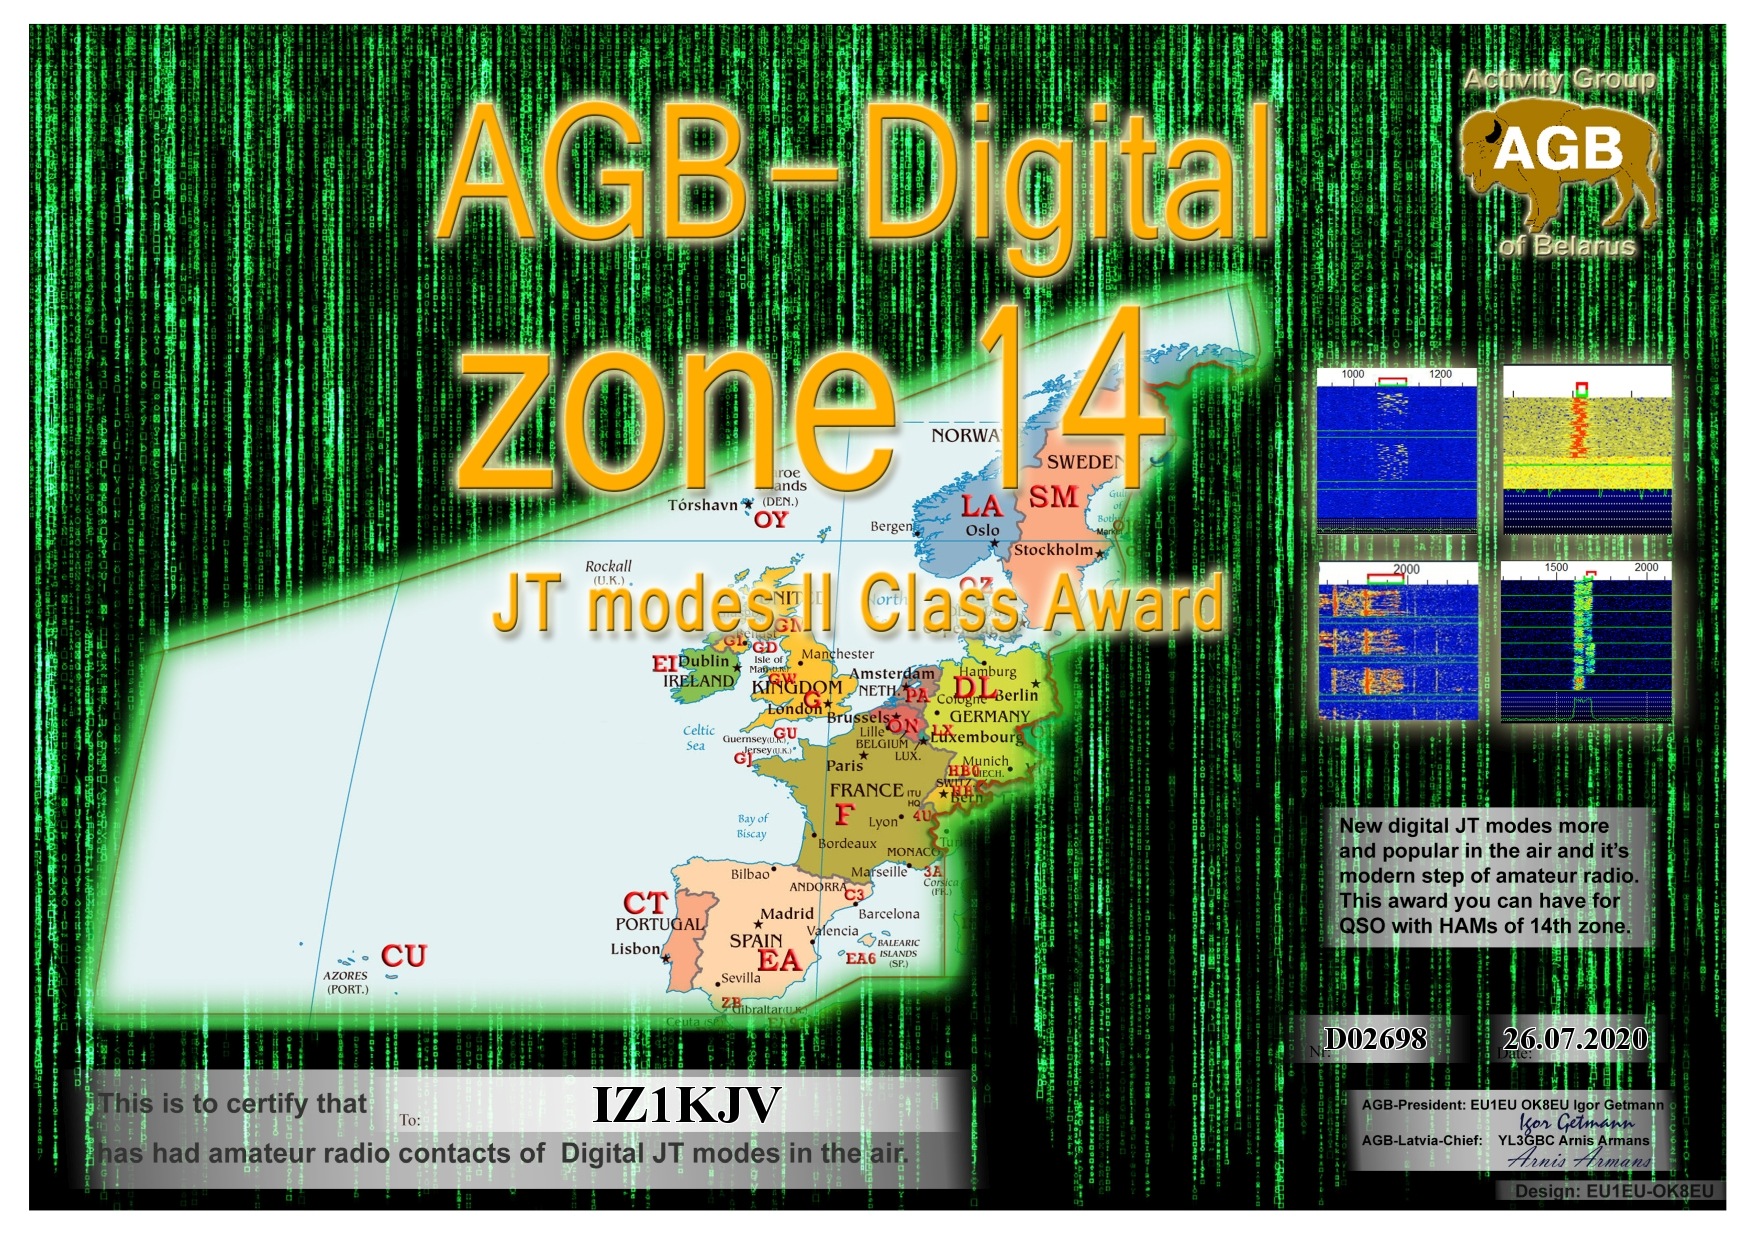 IZ1KJV-ZONE14_BASIC-II_AGB